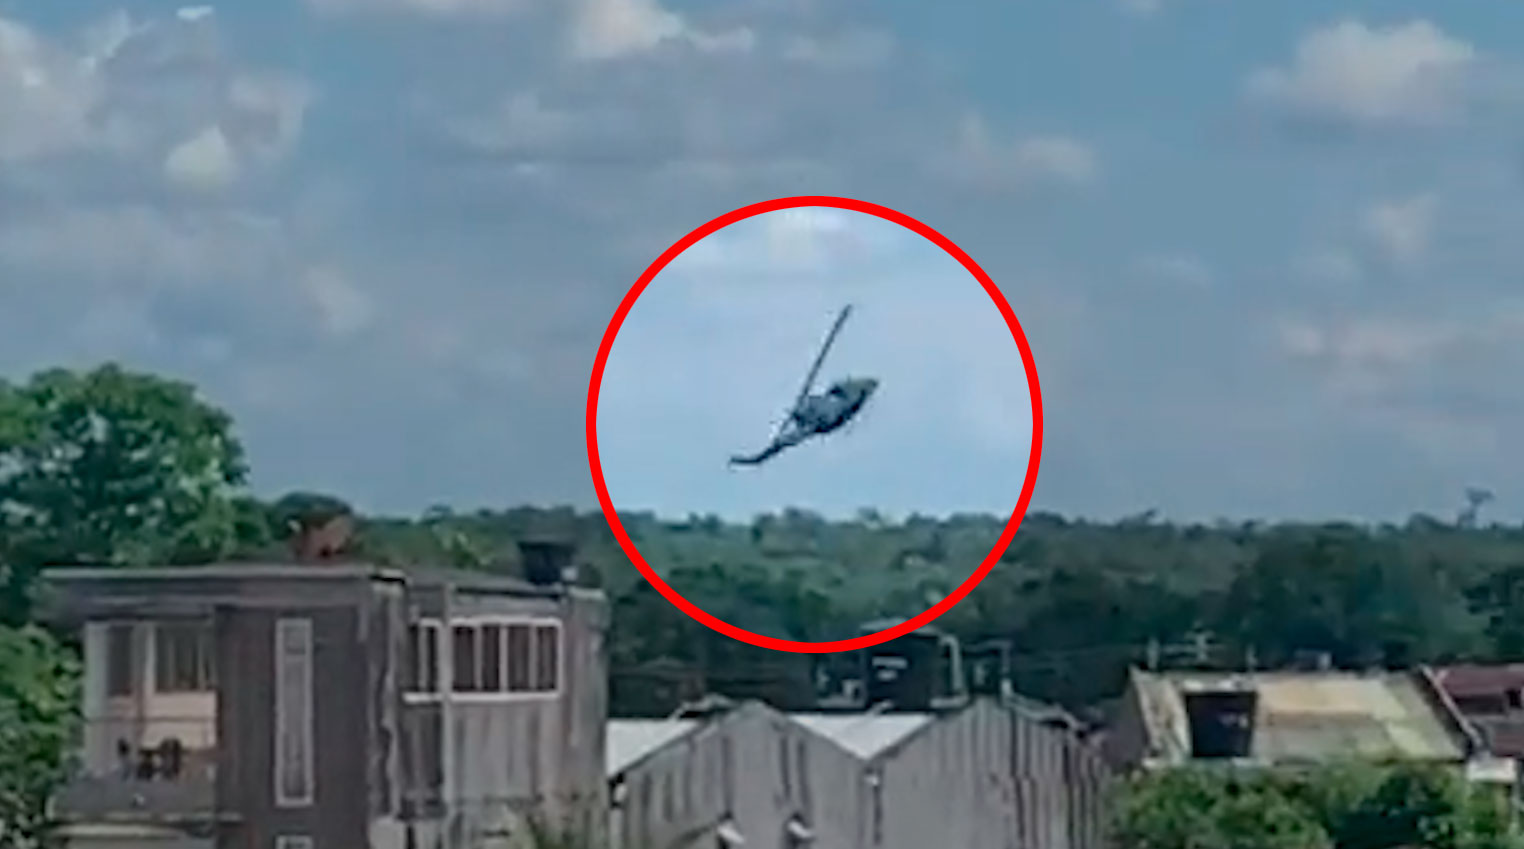 Helicóptero do Exército colombiano cai em área urbana na Colômbia